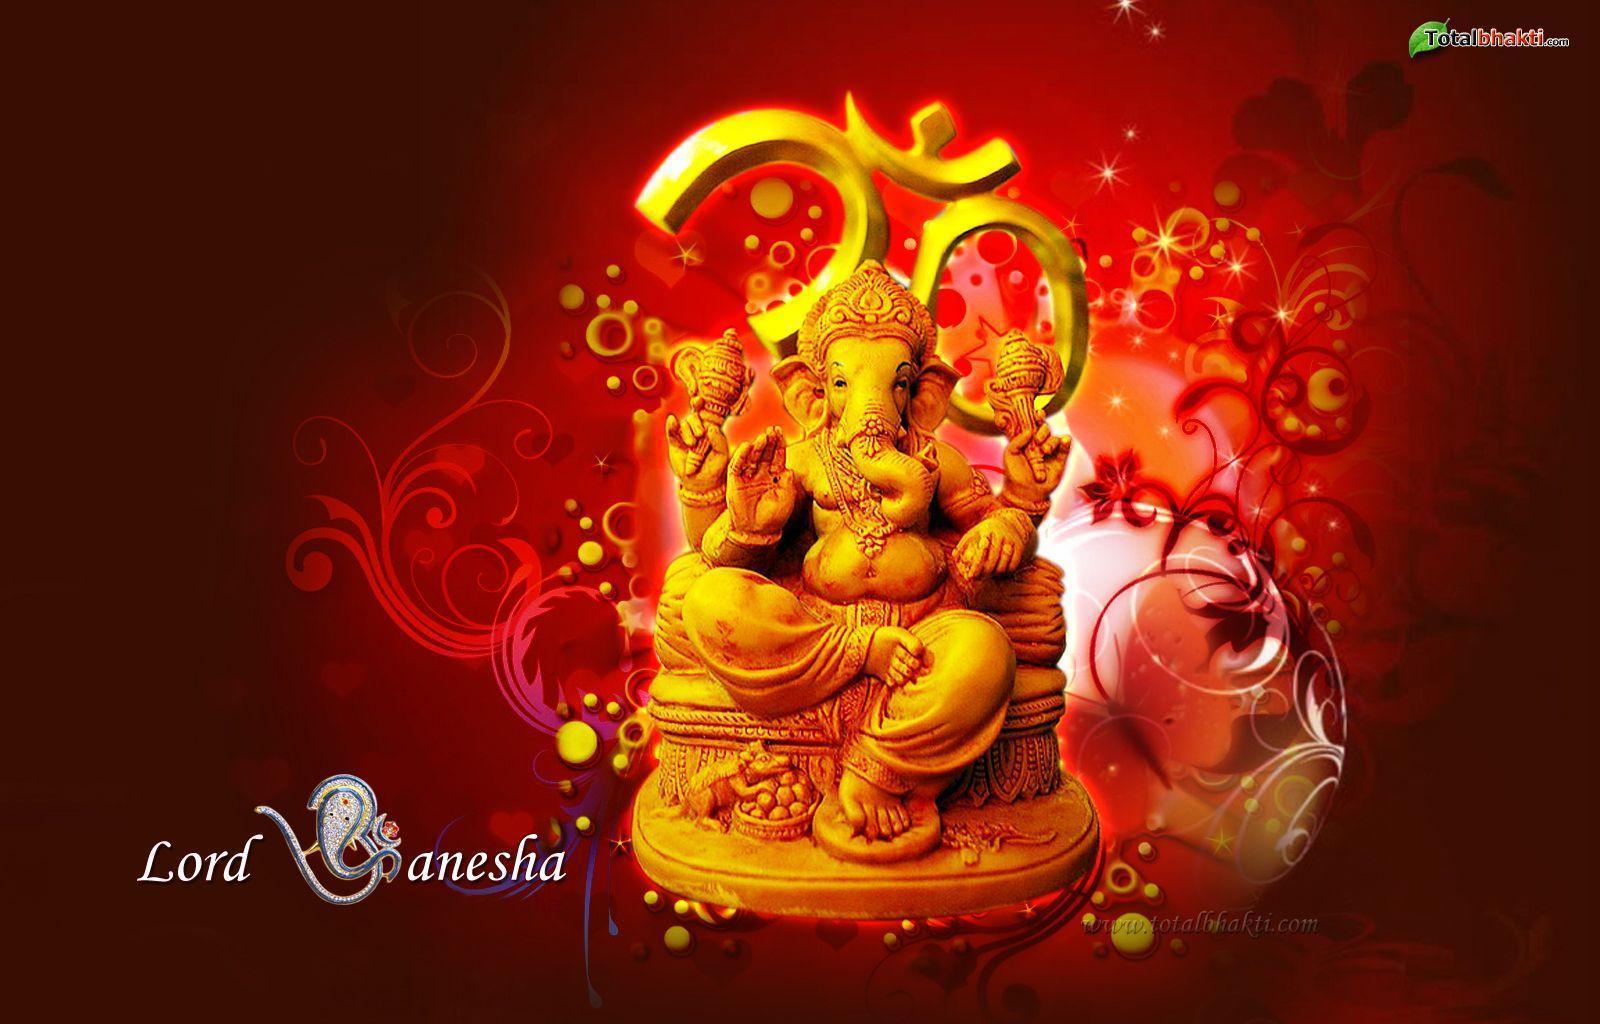 Ganesha wallpaper #ganesh#chaturthi. Happy Birthday, Ganesha